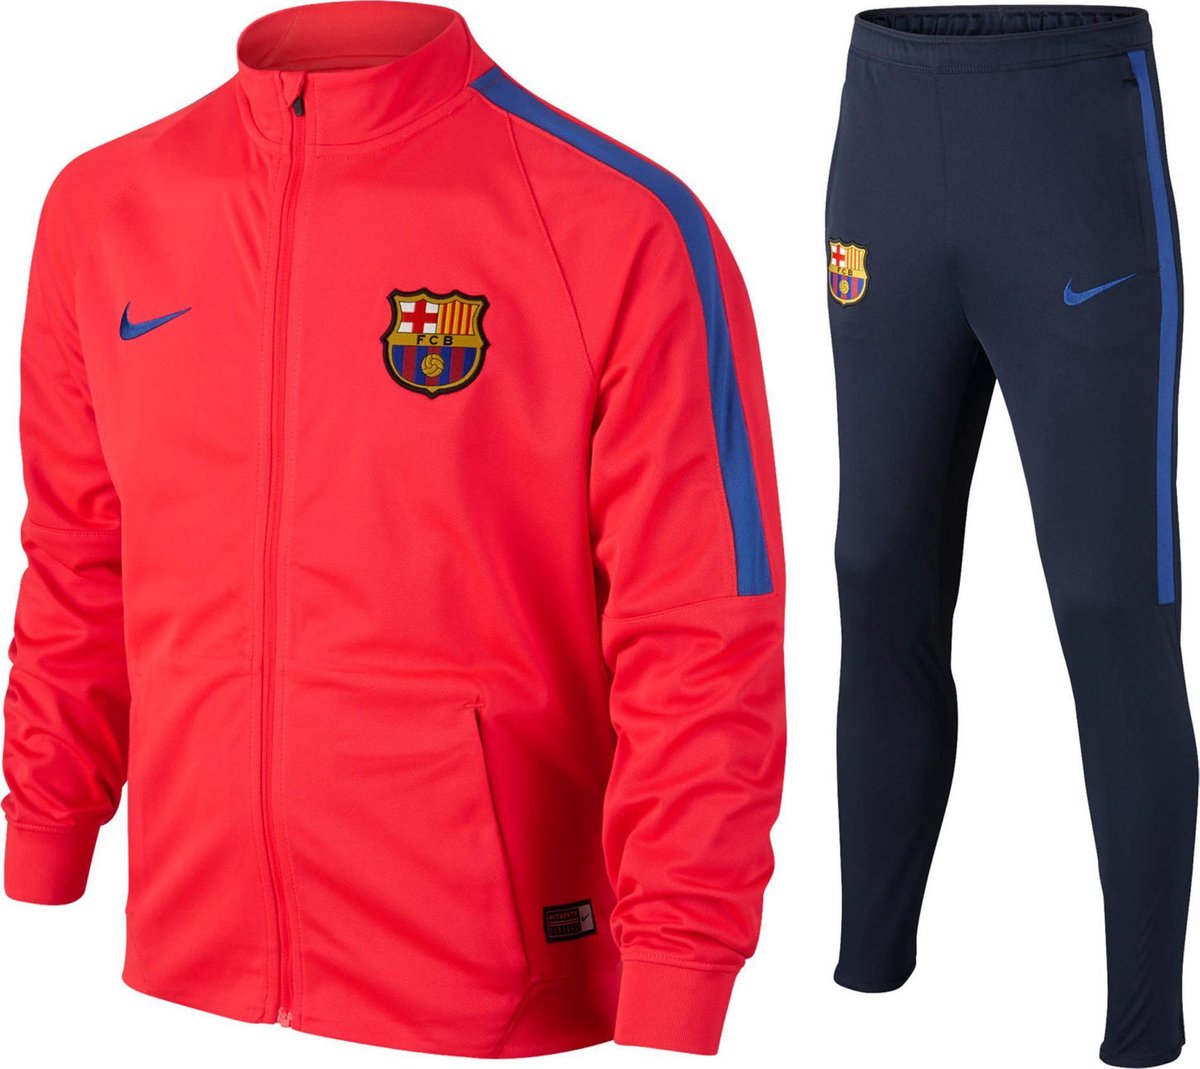 Martelaar Raar typist Nike FC Barcelona Trainingspak Junior Trainingspak - Maat 152 - Unisex -  rood/blauw... | bol.com